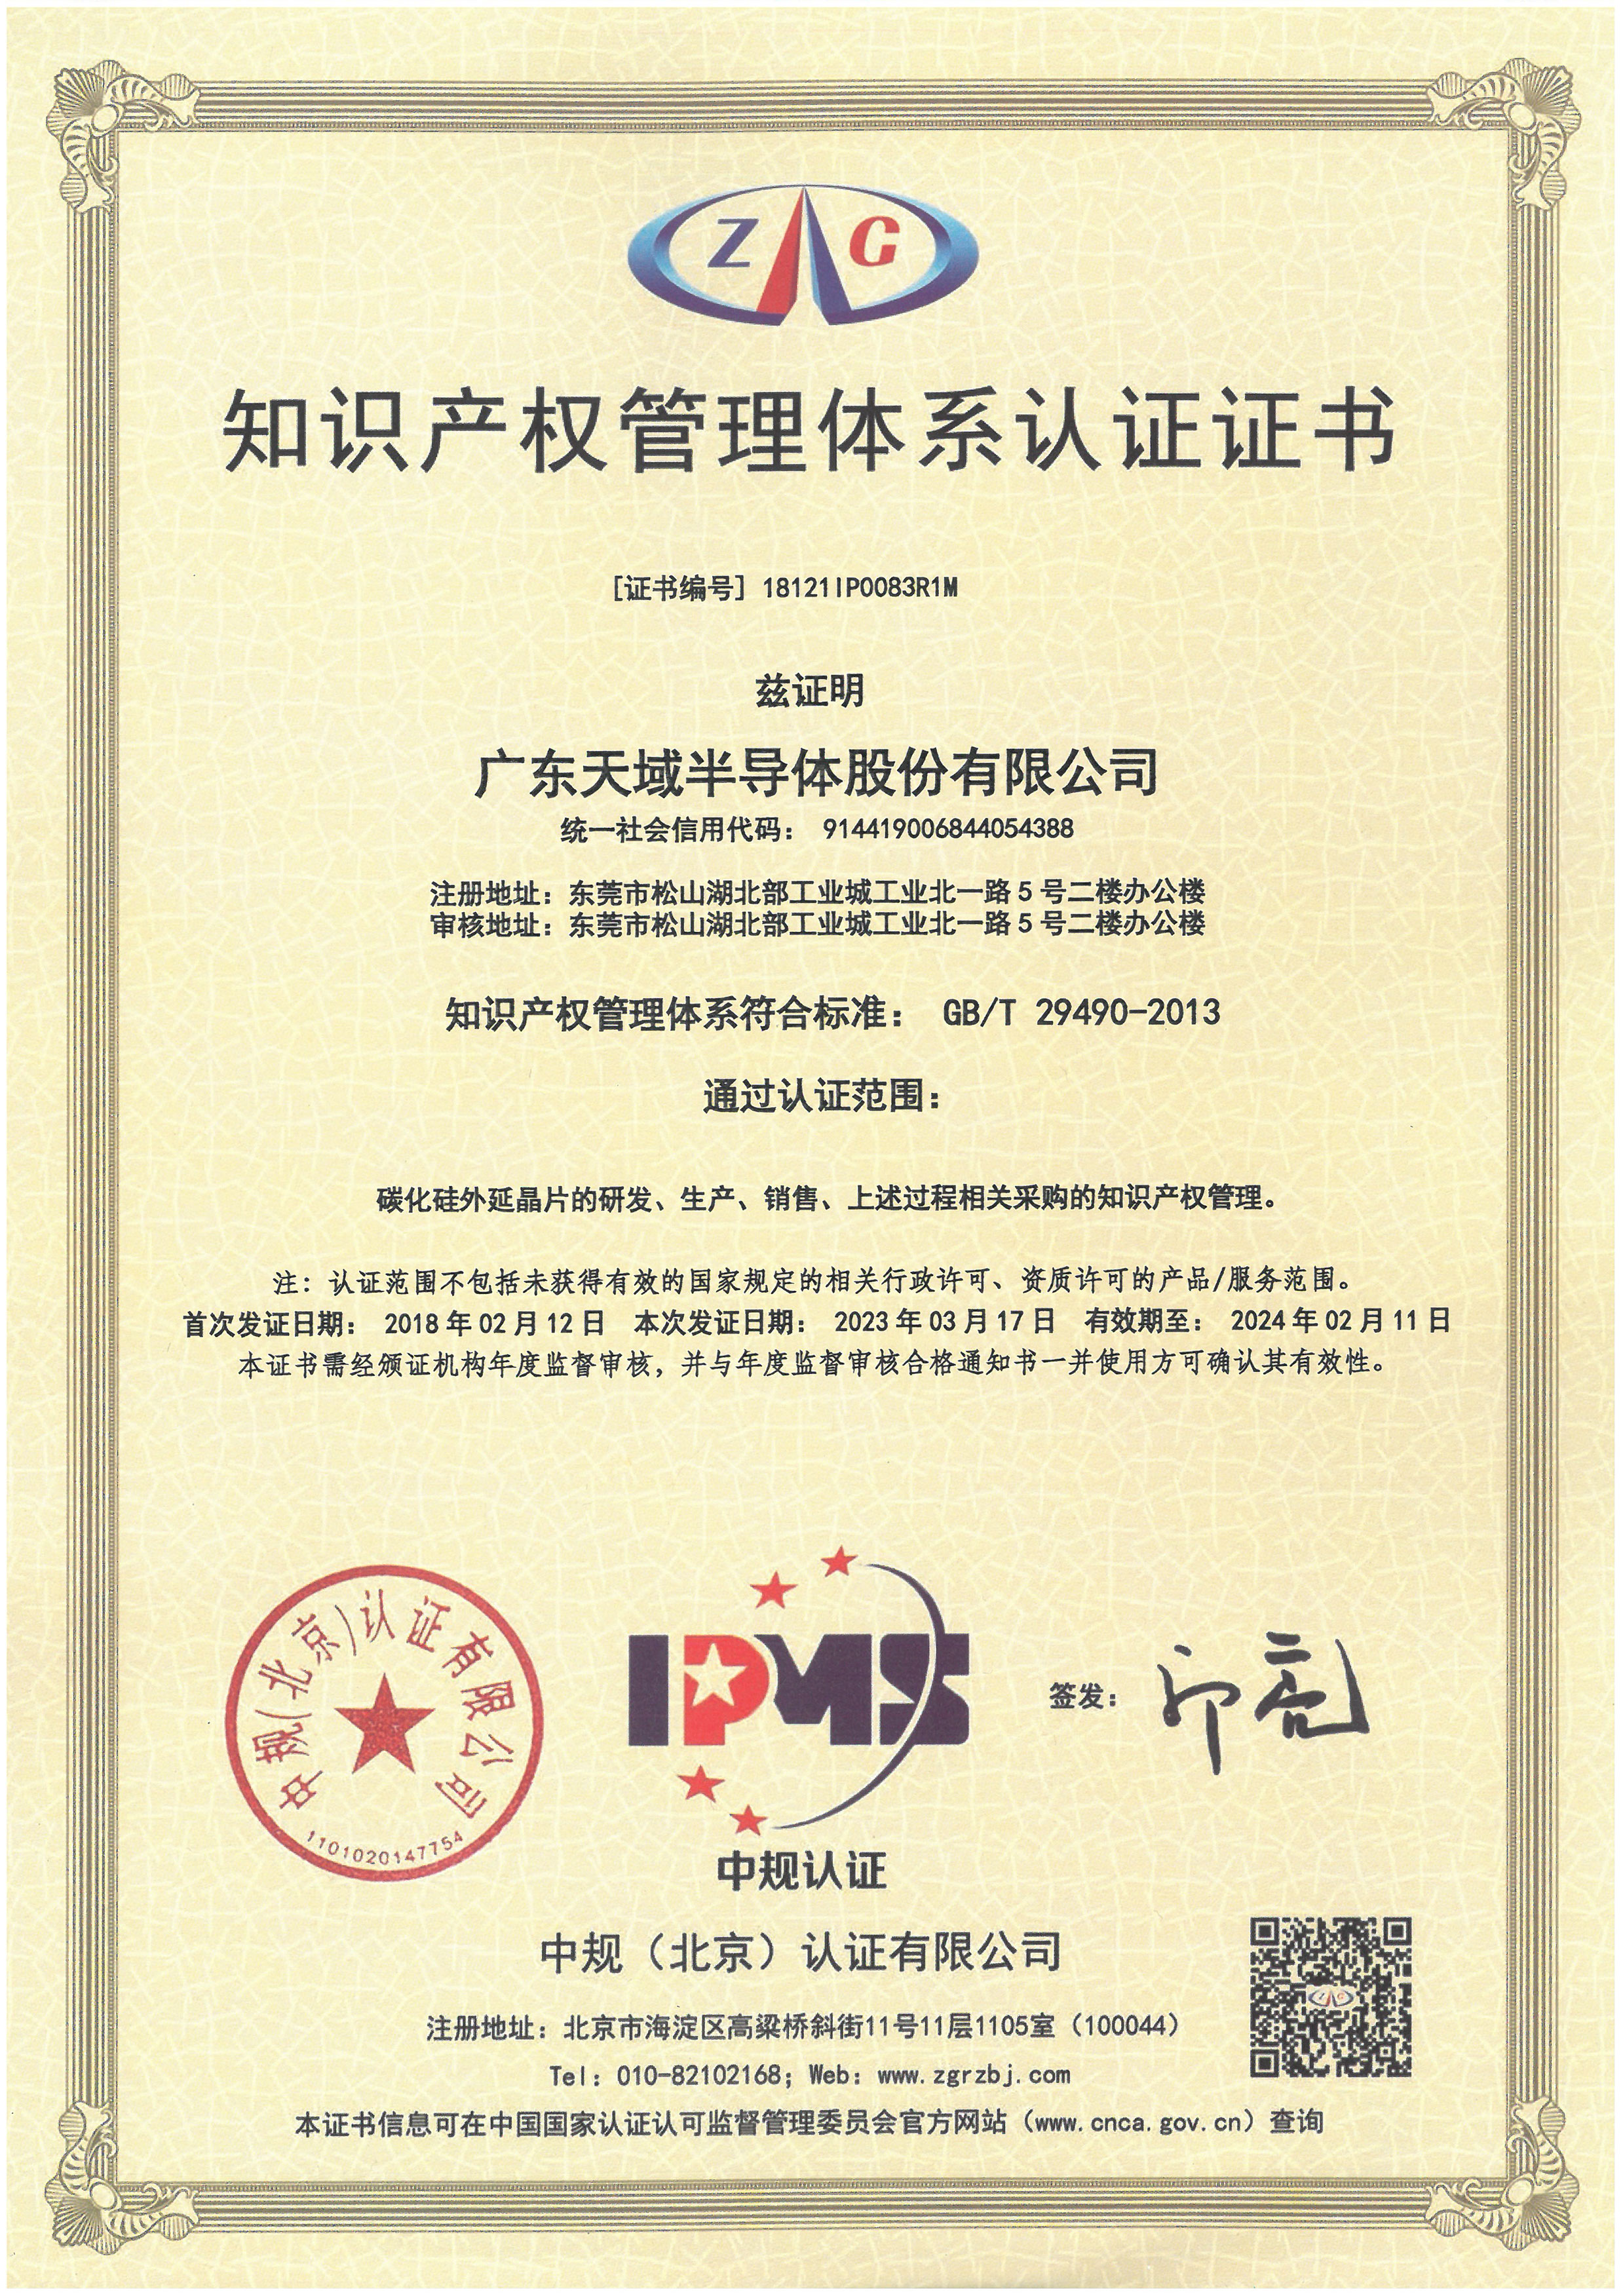 中文证书--知识产权管理体系-29490.jpg